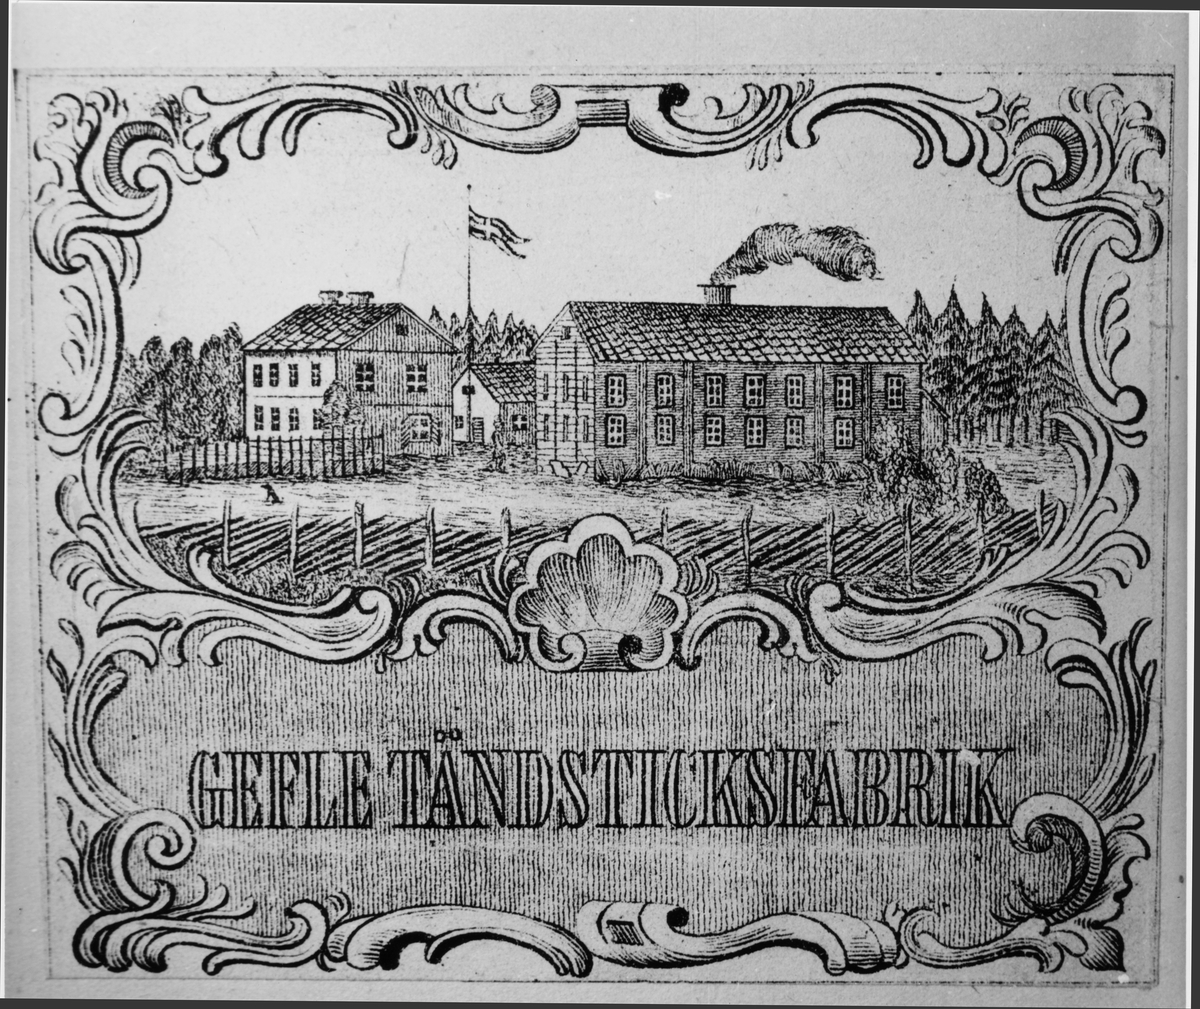 Gefle Tändsticksfabrik.
På Västerlöten.
Grundlagd 1862 av: N.F.Söderström.
Övertogs av V.T.Engwall.